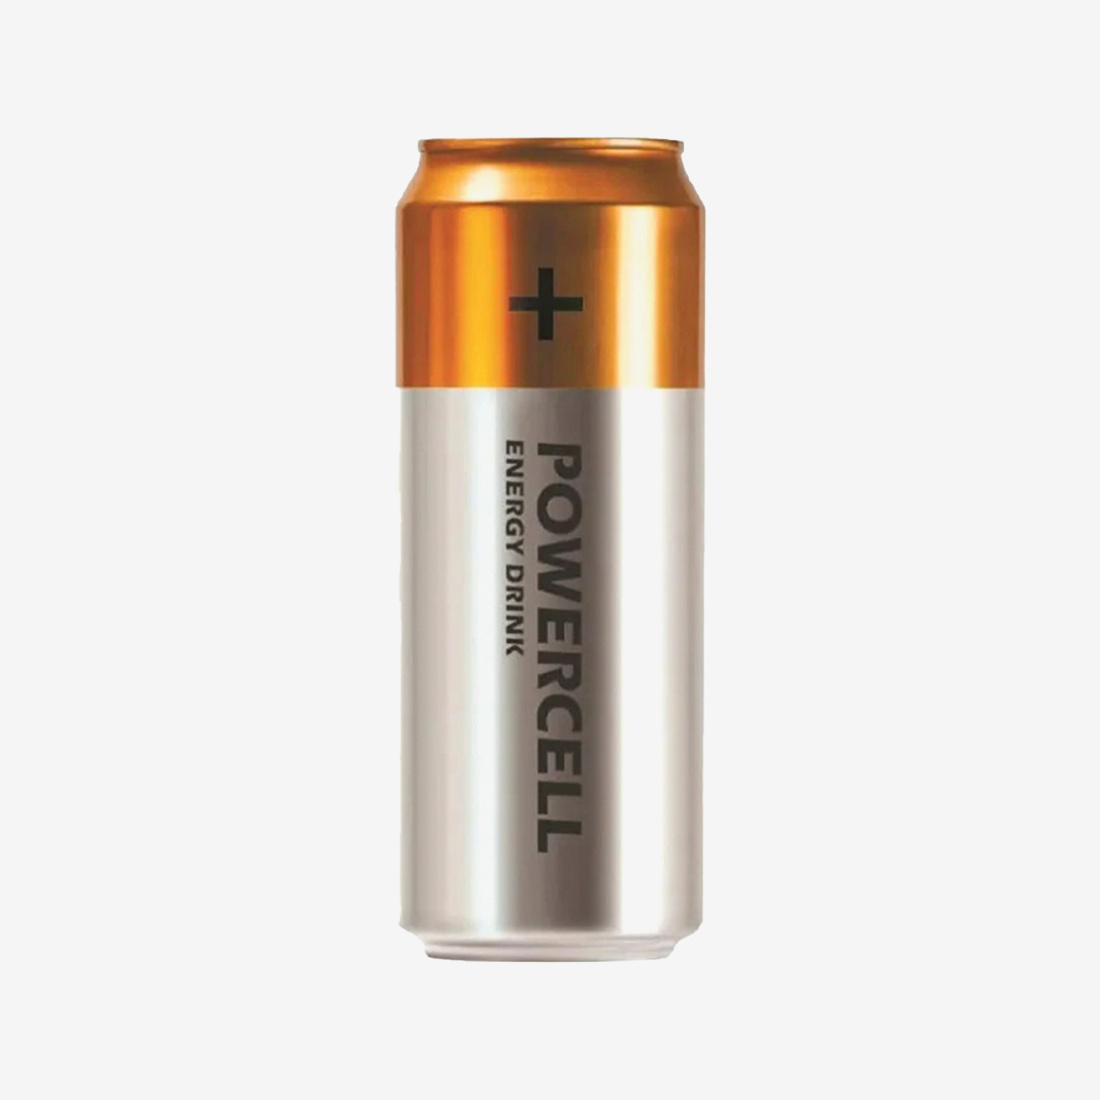 Напиток энергетический Powercell со вкусом мохито (500 мл) цена и фото